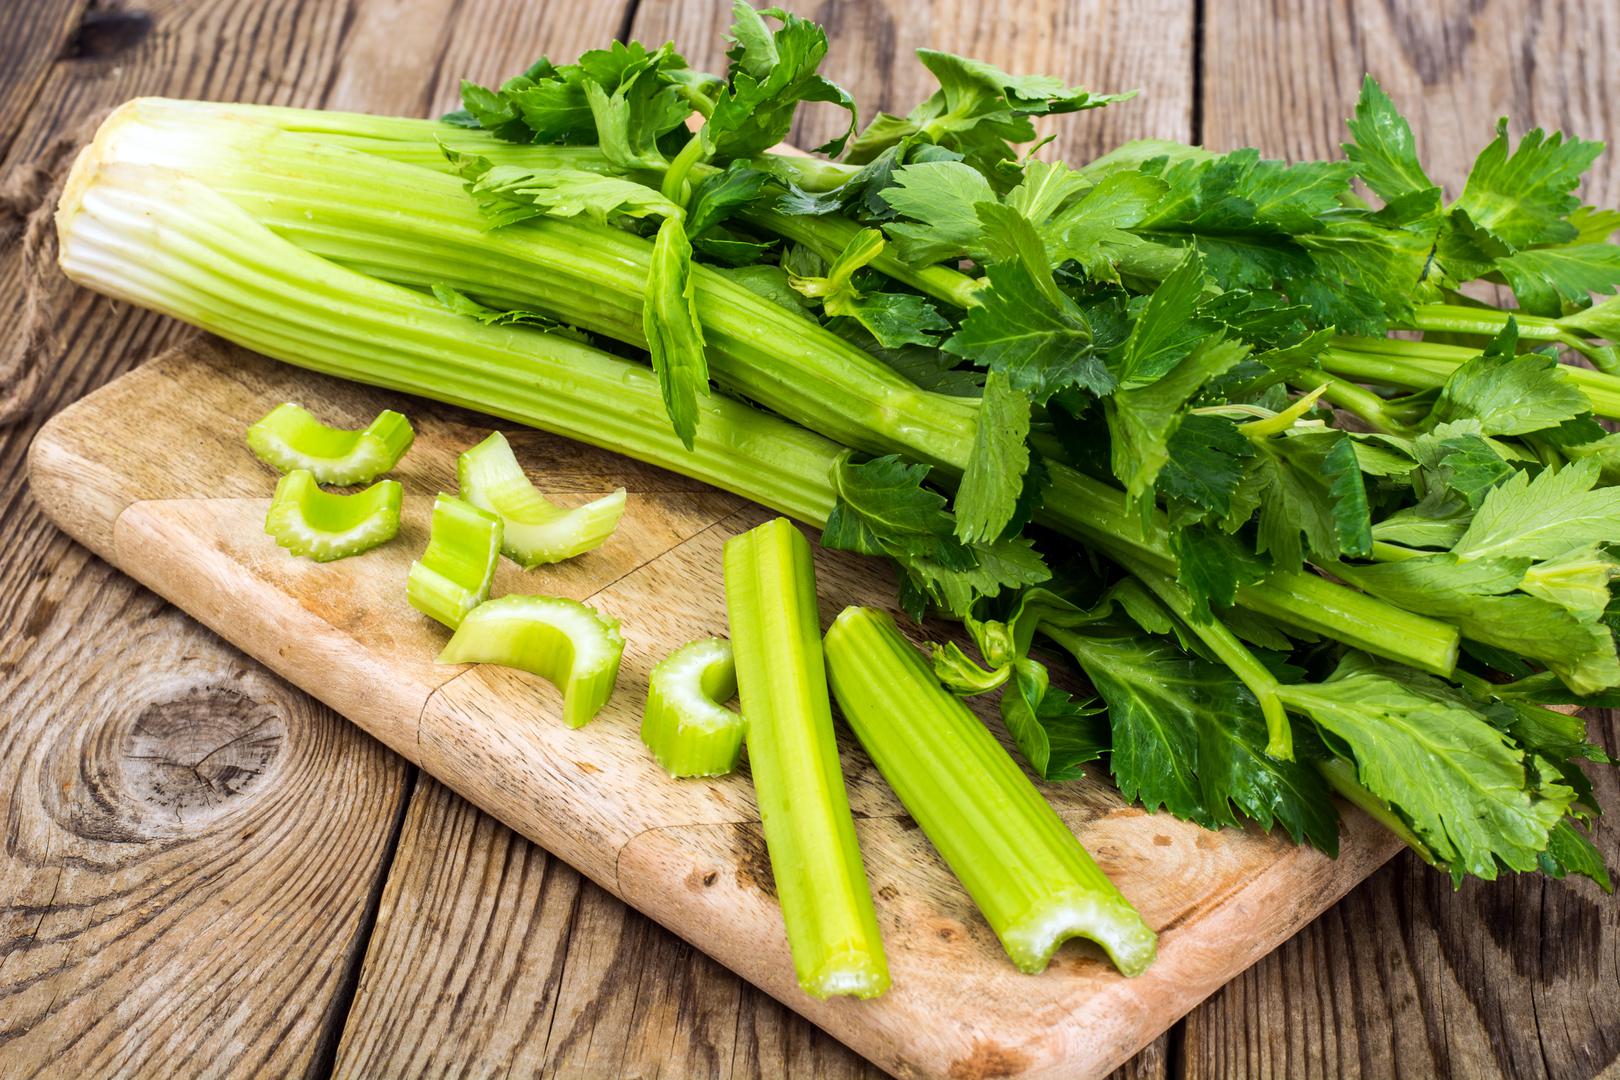 Celer: Celer je kao stvoreno povrće za prirodno snižavanje krvnog tlaka. Bogat je vlaknima te sadrži aktivne tvari koje opuštaju mišiće u stijenkama arterija te tako snižava krvni tlak i jača cijeli krvožilni sustav. Uvođenjem korijena, stabiljke ili lista celera u svakodnevu prehranu ubrzo ćete osjetiti njegov pozitivan efekt. Iako celer u svom sastavu sadrži i natrij koji povisuje krvni tlak, ima ga u malim količinama (jedna stabiljka sadrži 35 mg natrija) pa neće negativno utjecati na vaše zdravlje. Za snižavanje krvnog tlaka preporučuje se sok od celera.